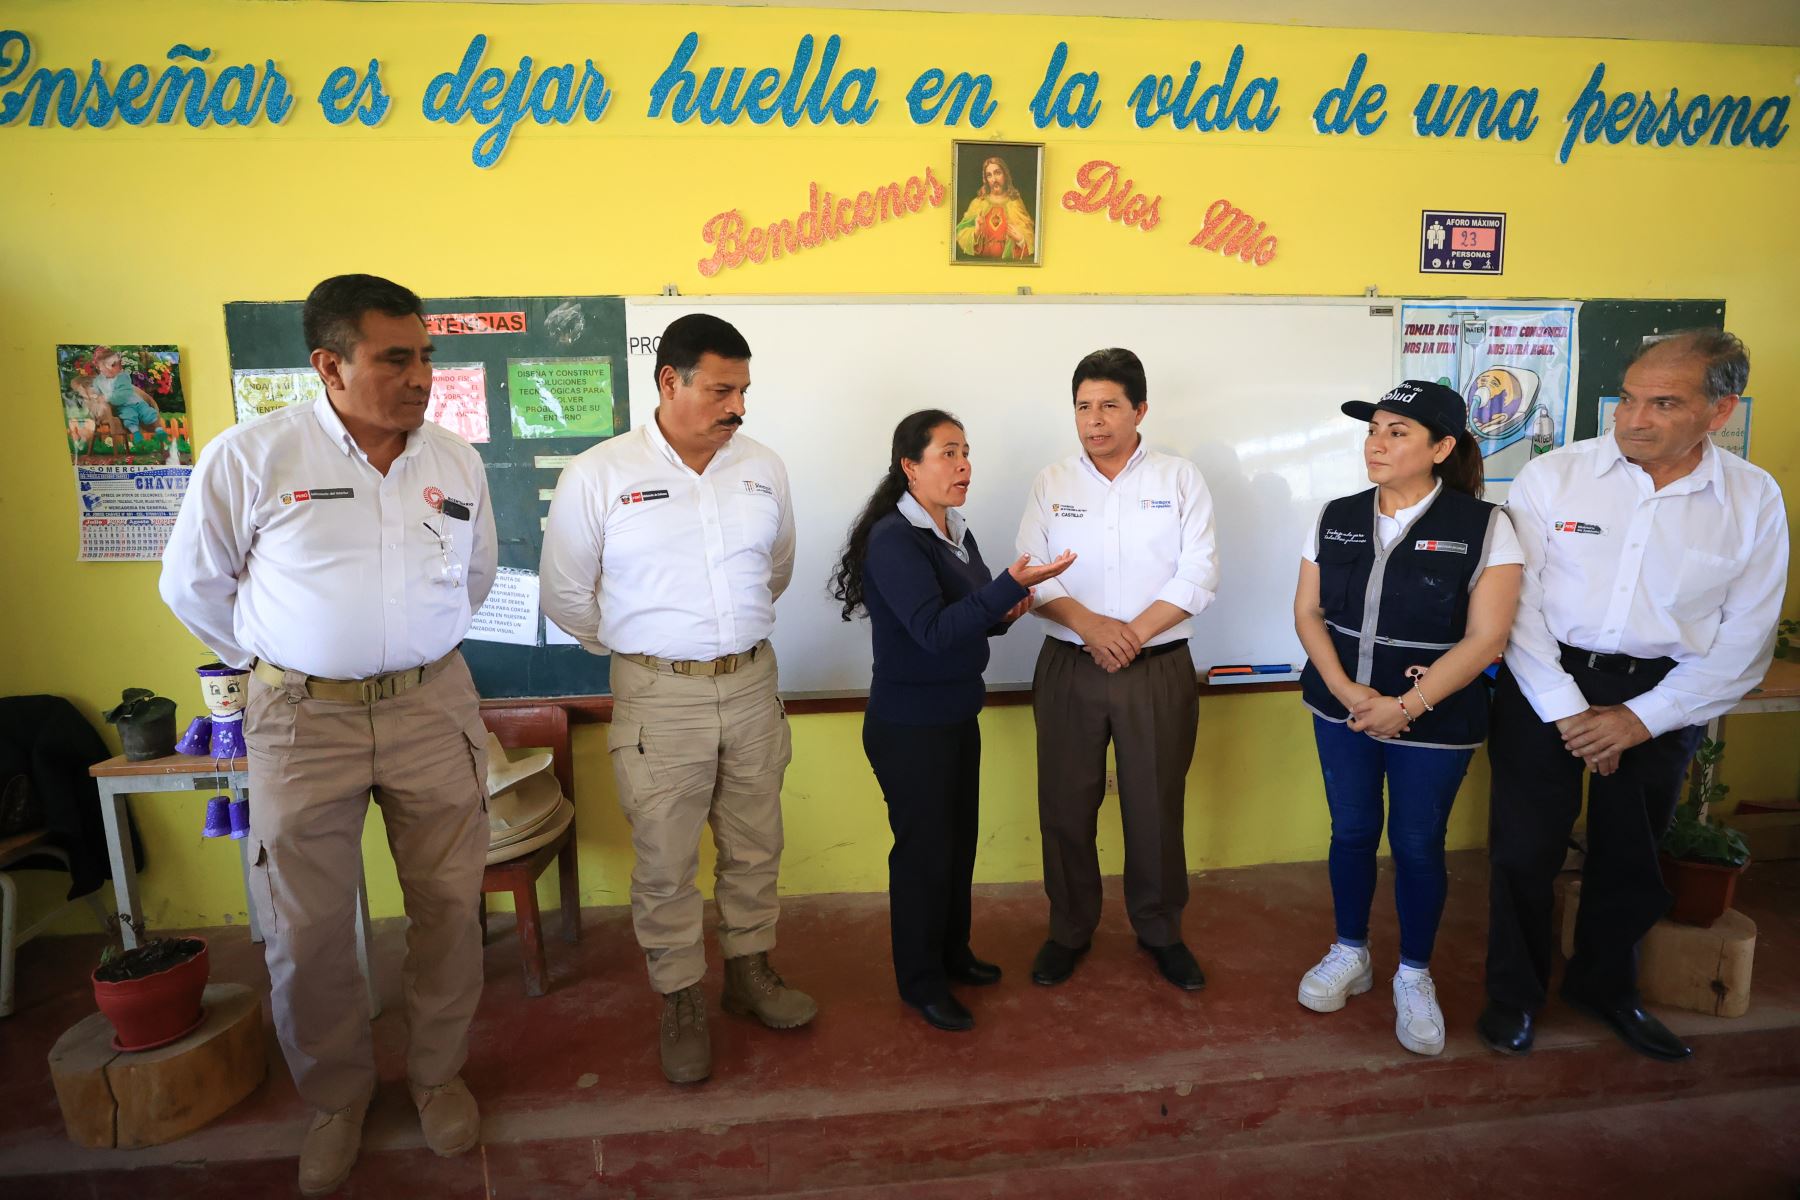 El presidente Pedro Castillo visitó hoy un colegio de Cajamarca. ANDINA/Prensa Presidencia